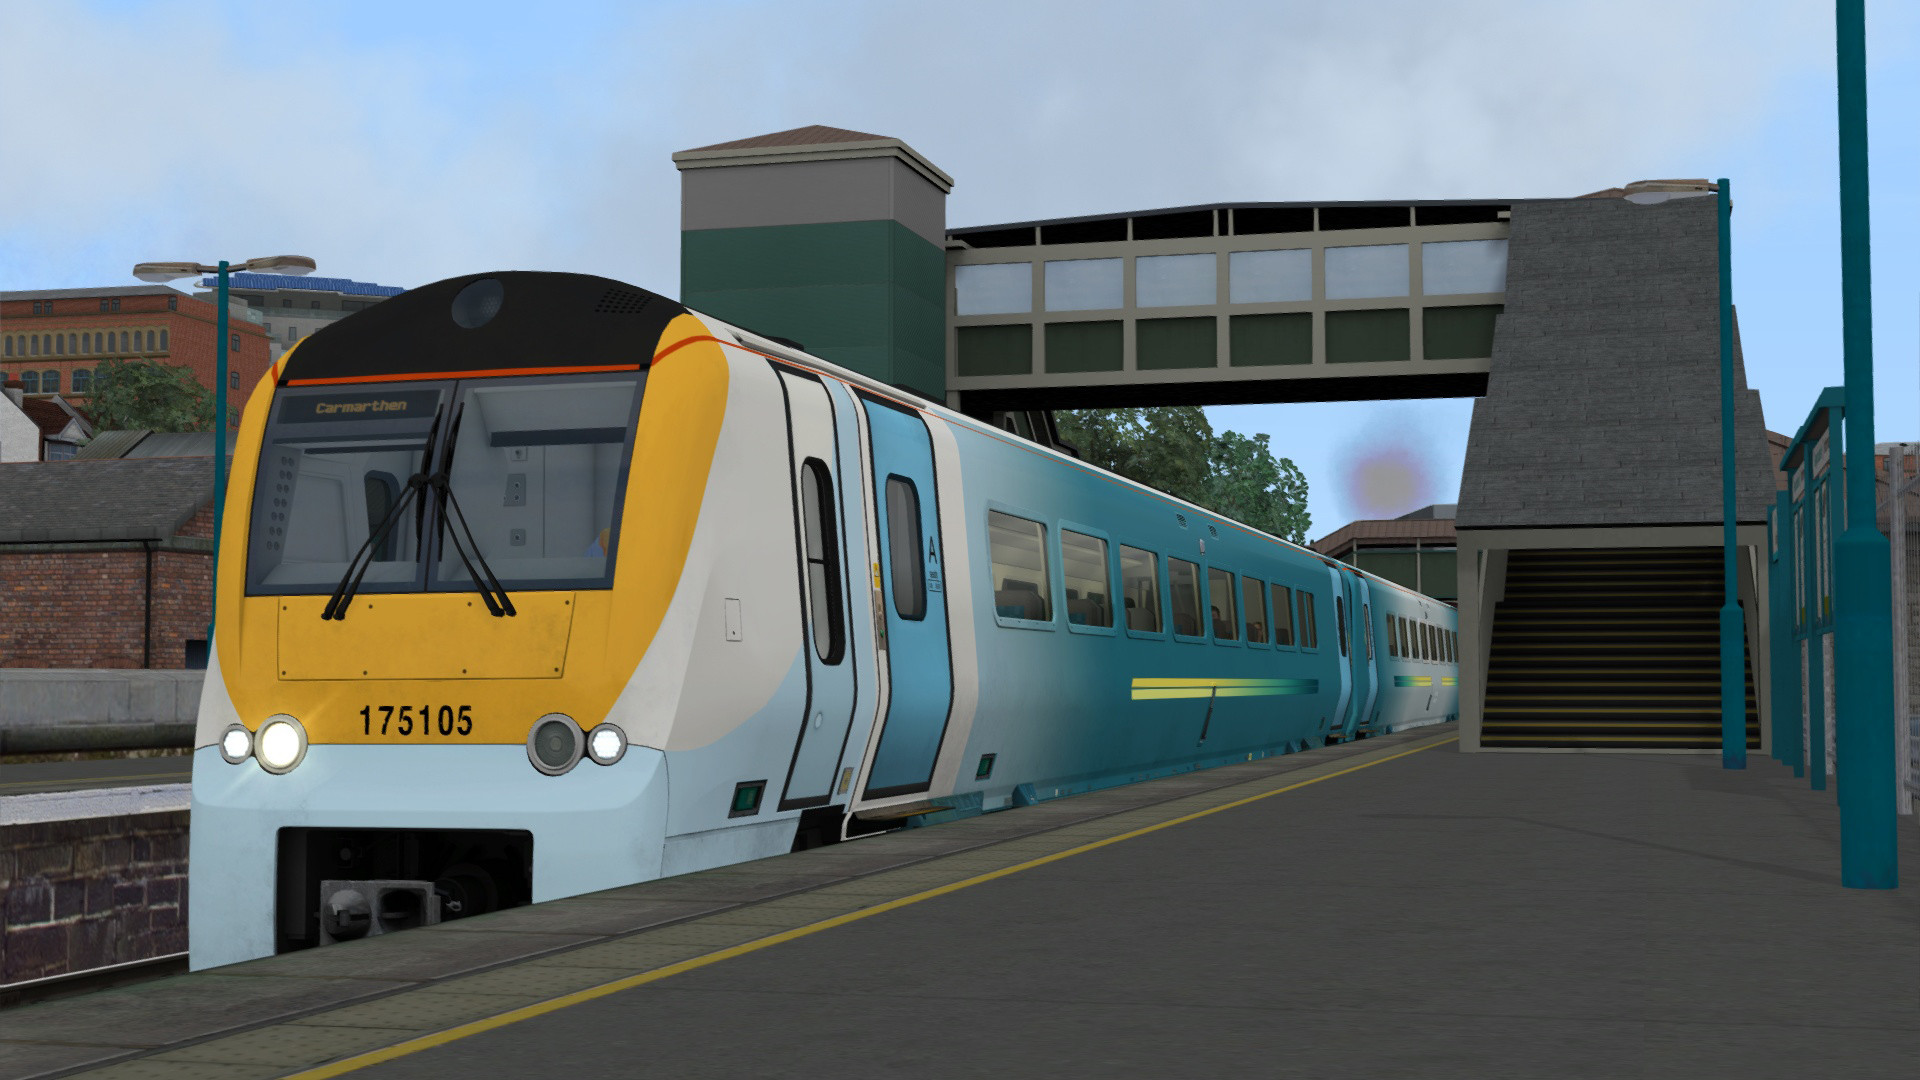 Train Simulator - South Wales Coastal: Bristol - Swansea Route Add-on DLC Steam CD Key, 4.17$